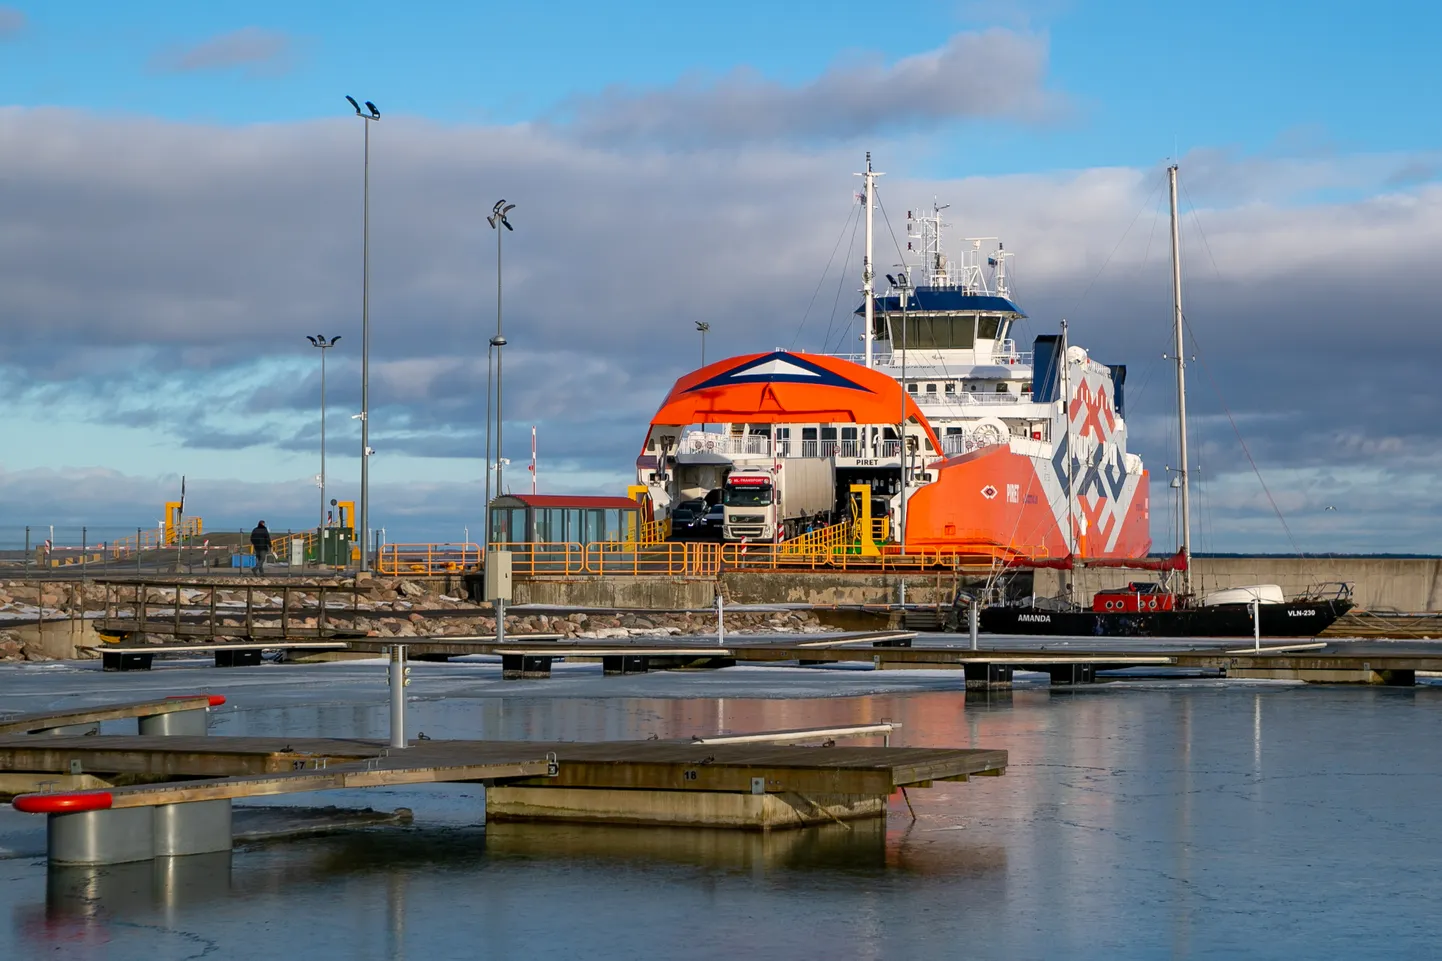 PIRET JÄÄB: Päris suure tõenäosusega ei ole TS Laevadele Väinamere laevaliikluse korraldamisel konkurenti. Fotol parvlaev 
Piret Kuivastu sadamas.